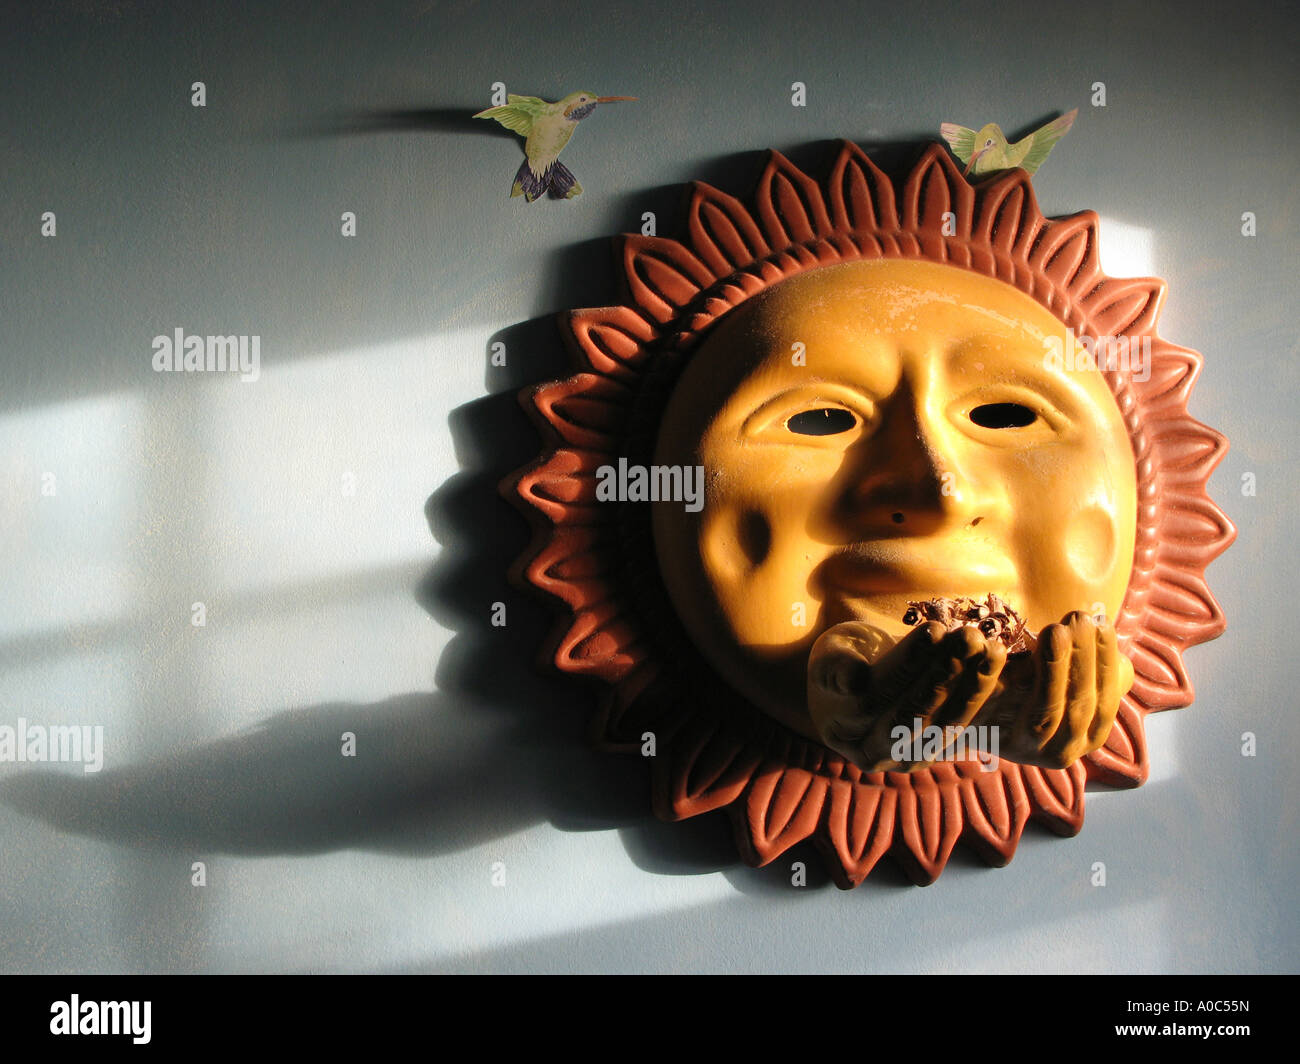 Immagine di stock di una maschera di Sun con un offerta di cedro Foto Stock